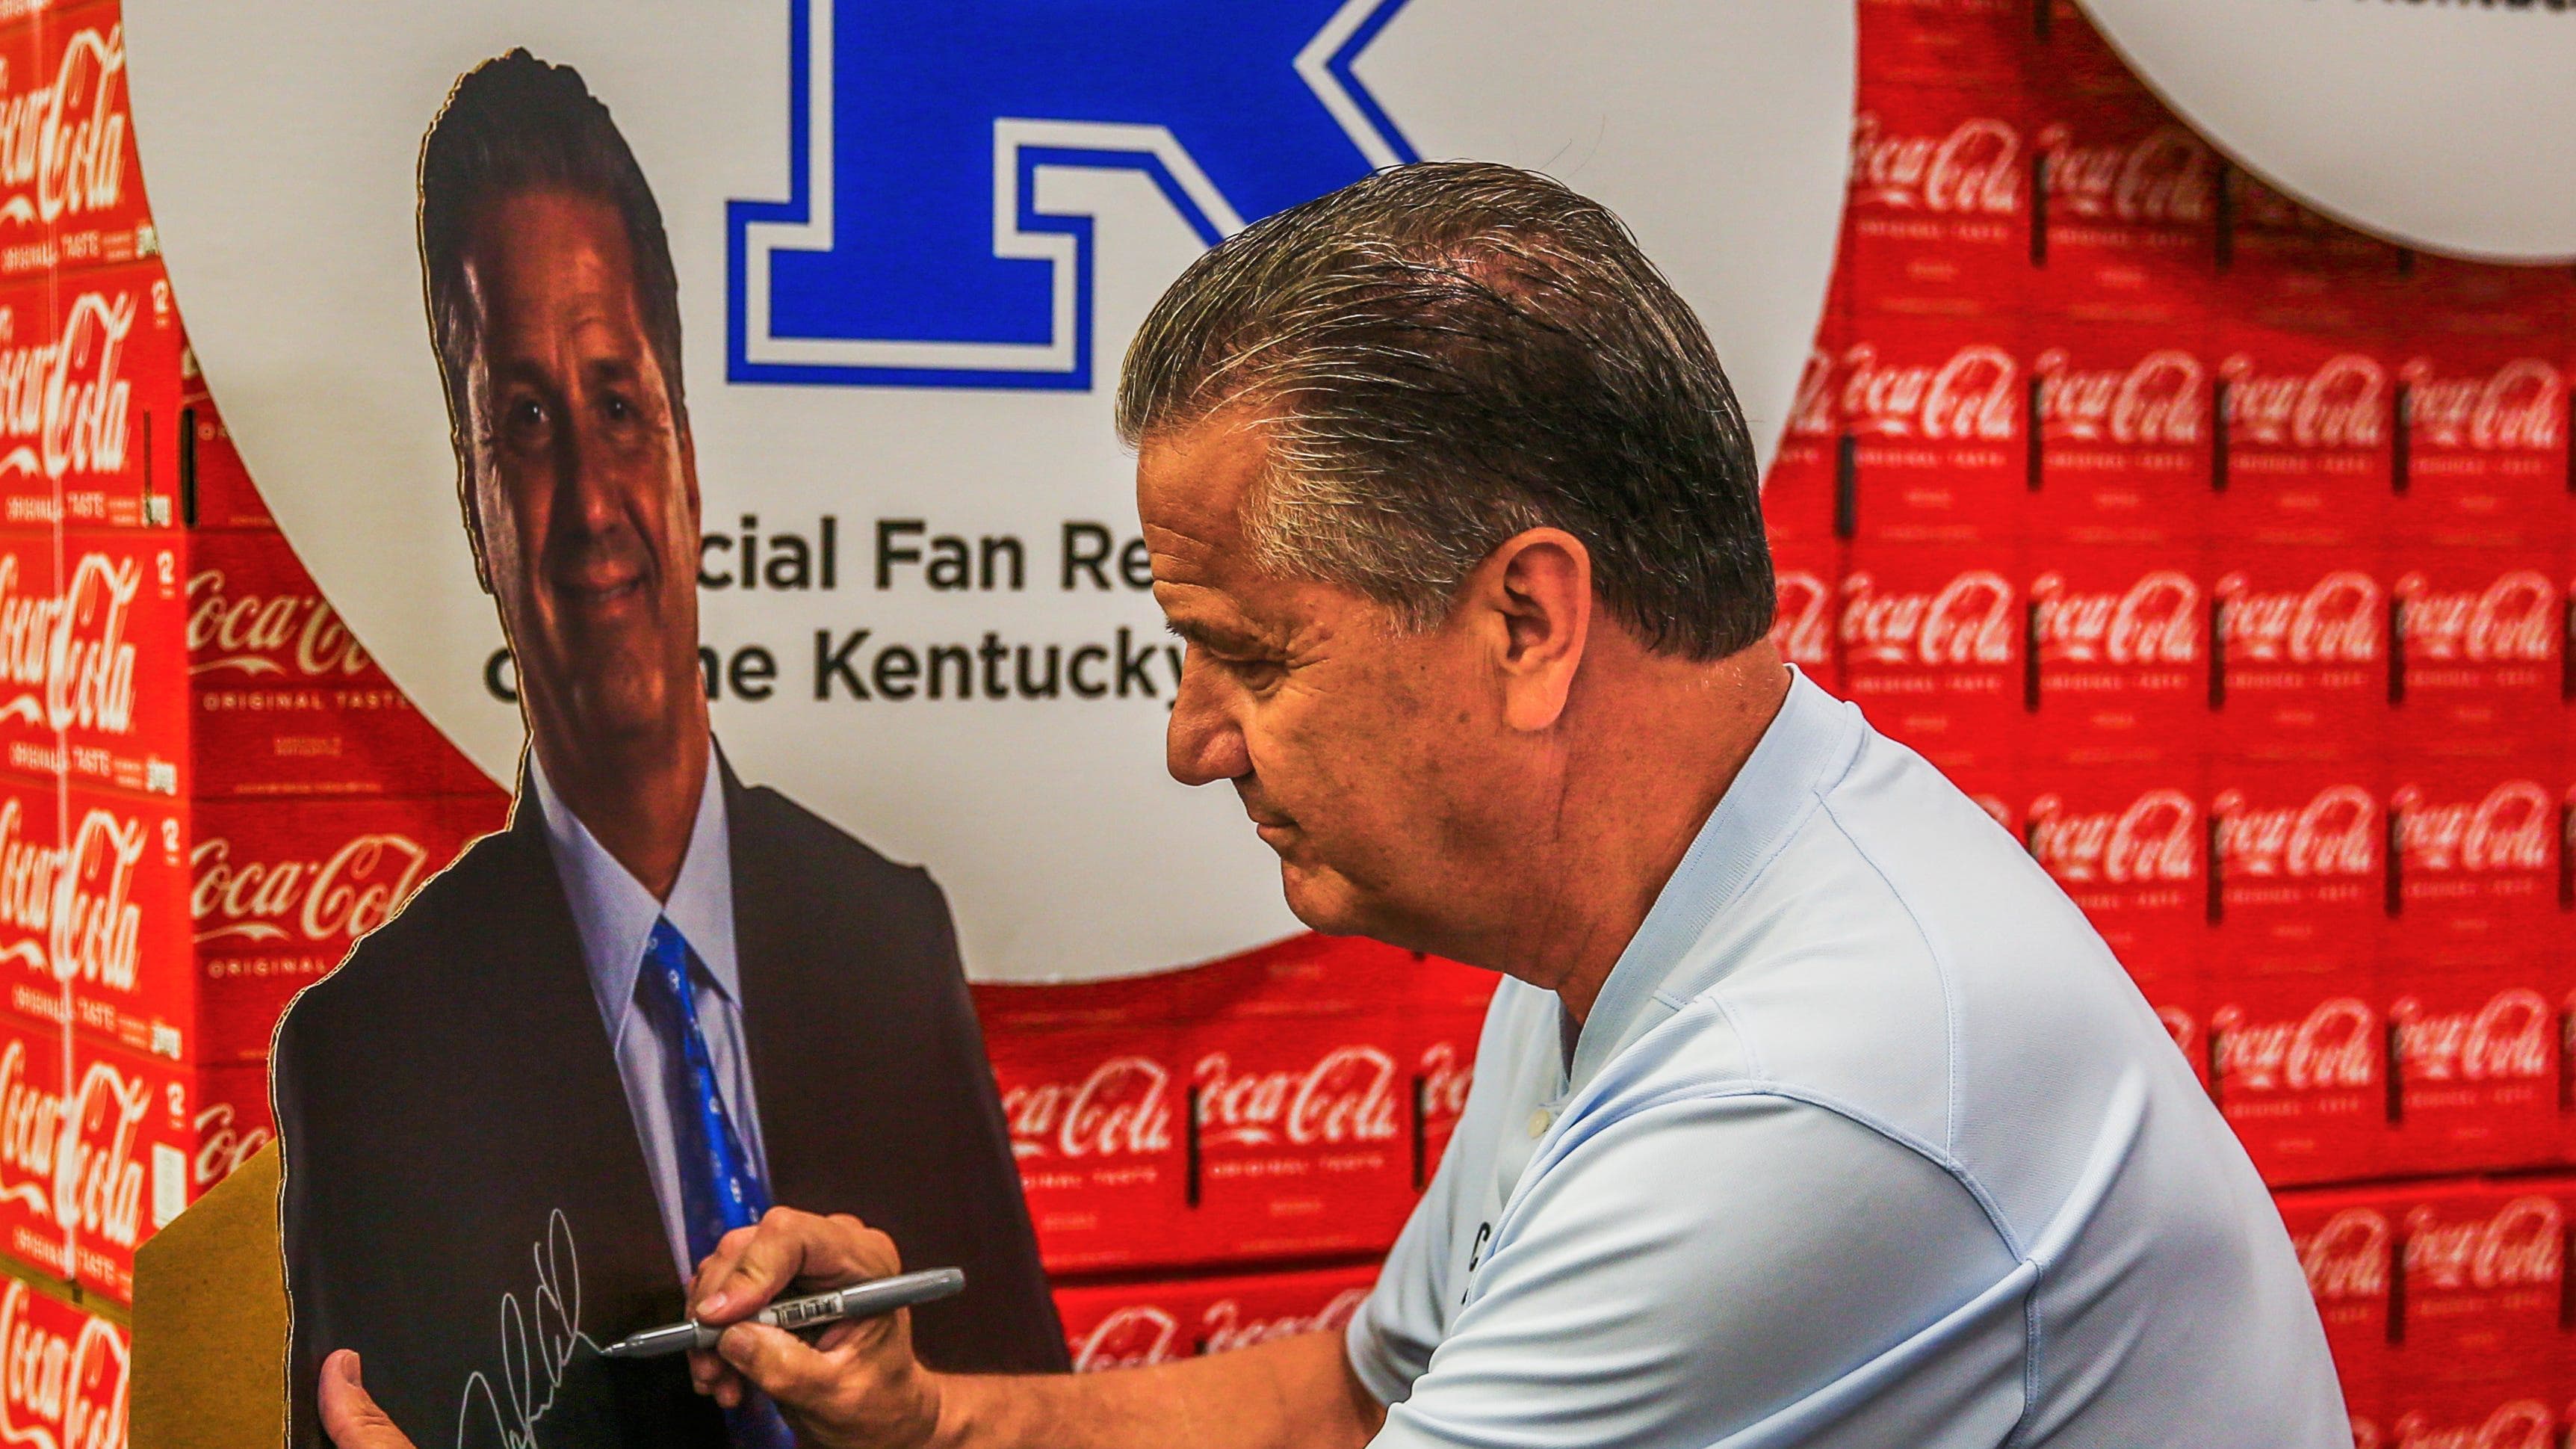 Former Kentucky men's head basketball coach John Calipari autographs a standing poster of himself at a Kroger.